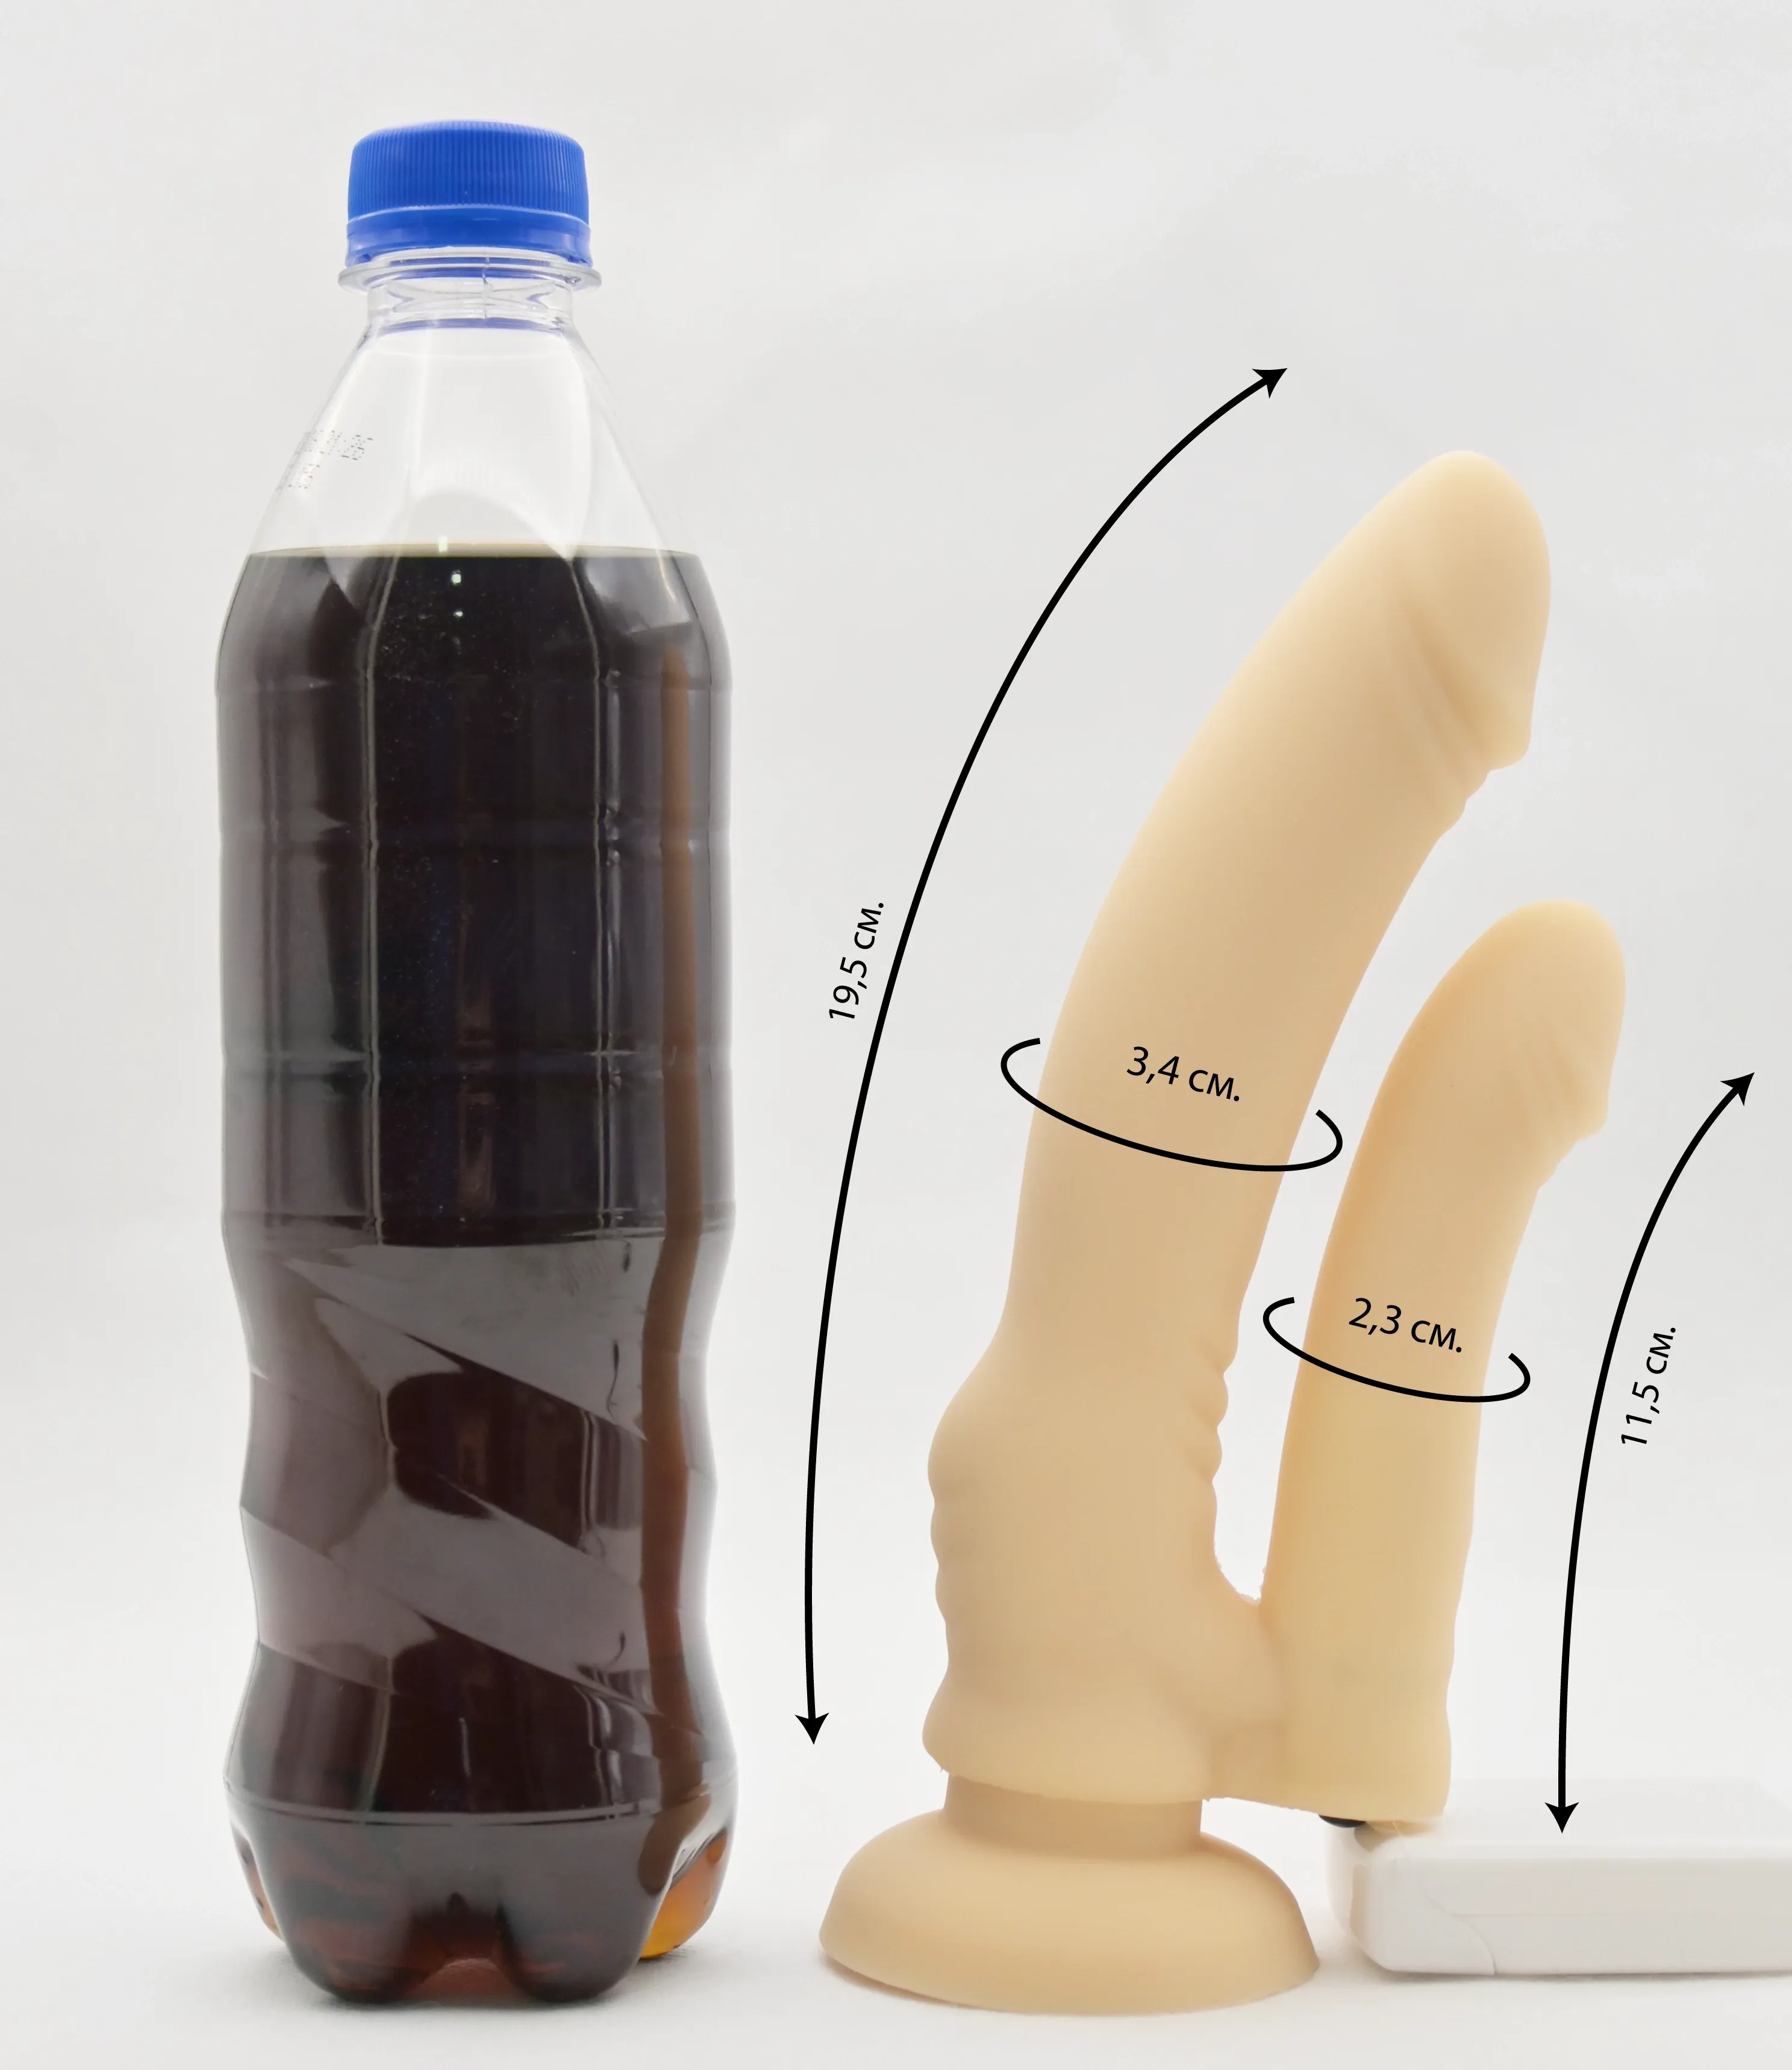 Размеры фаллоса и сравнение с бутылкой газировки